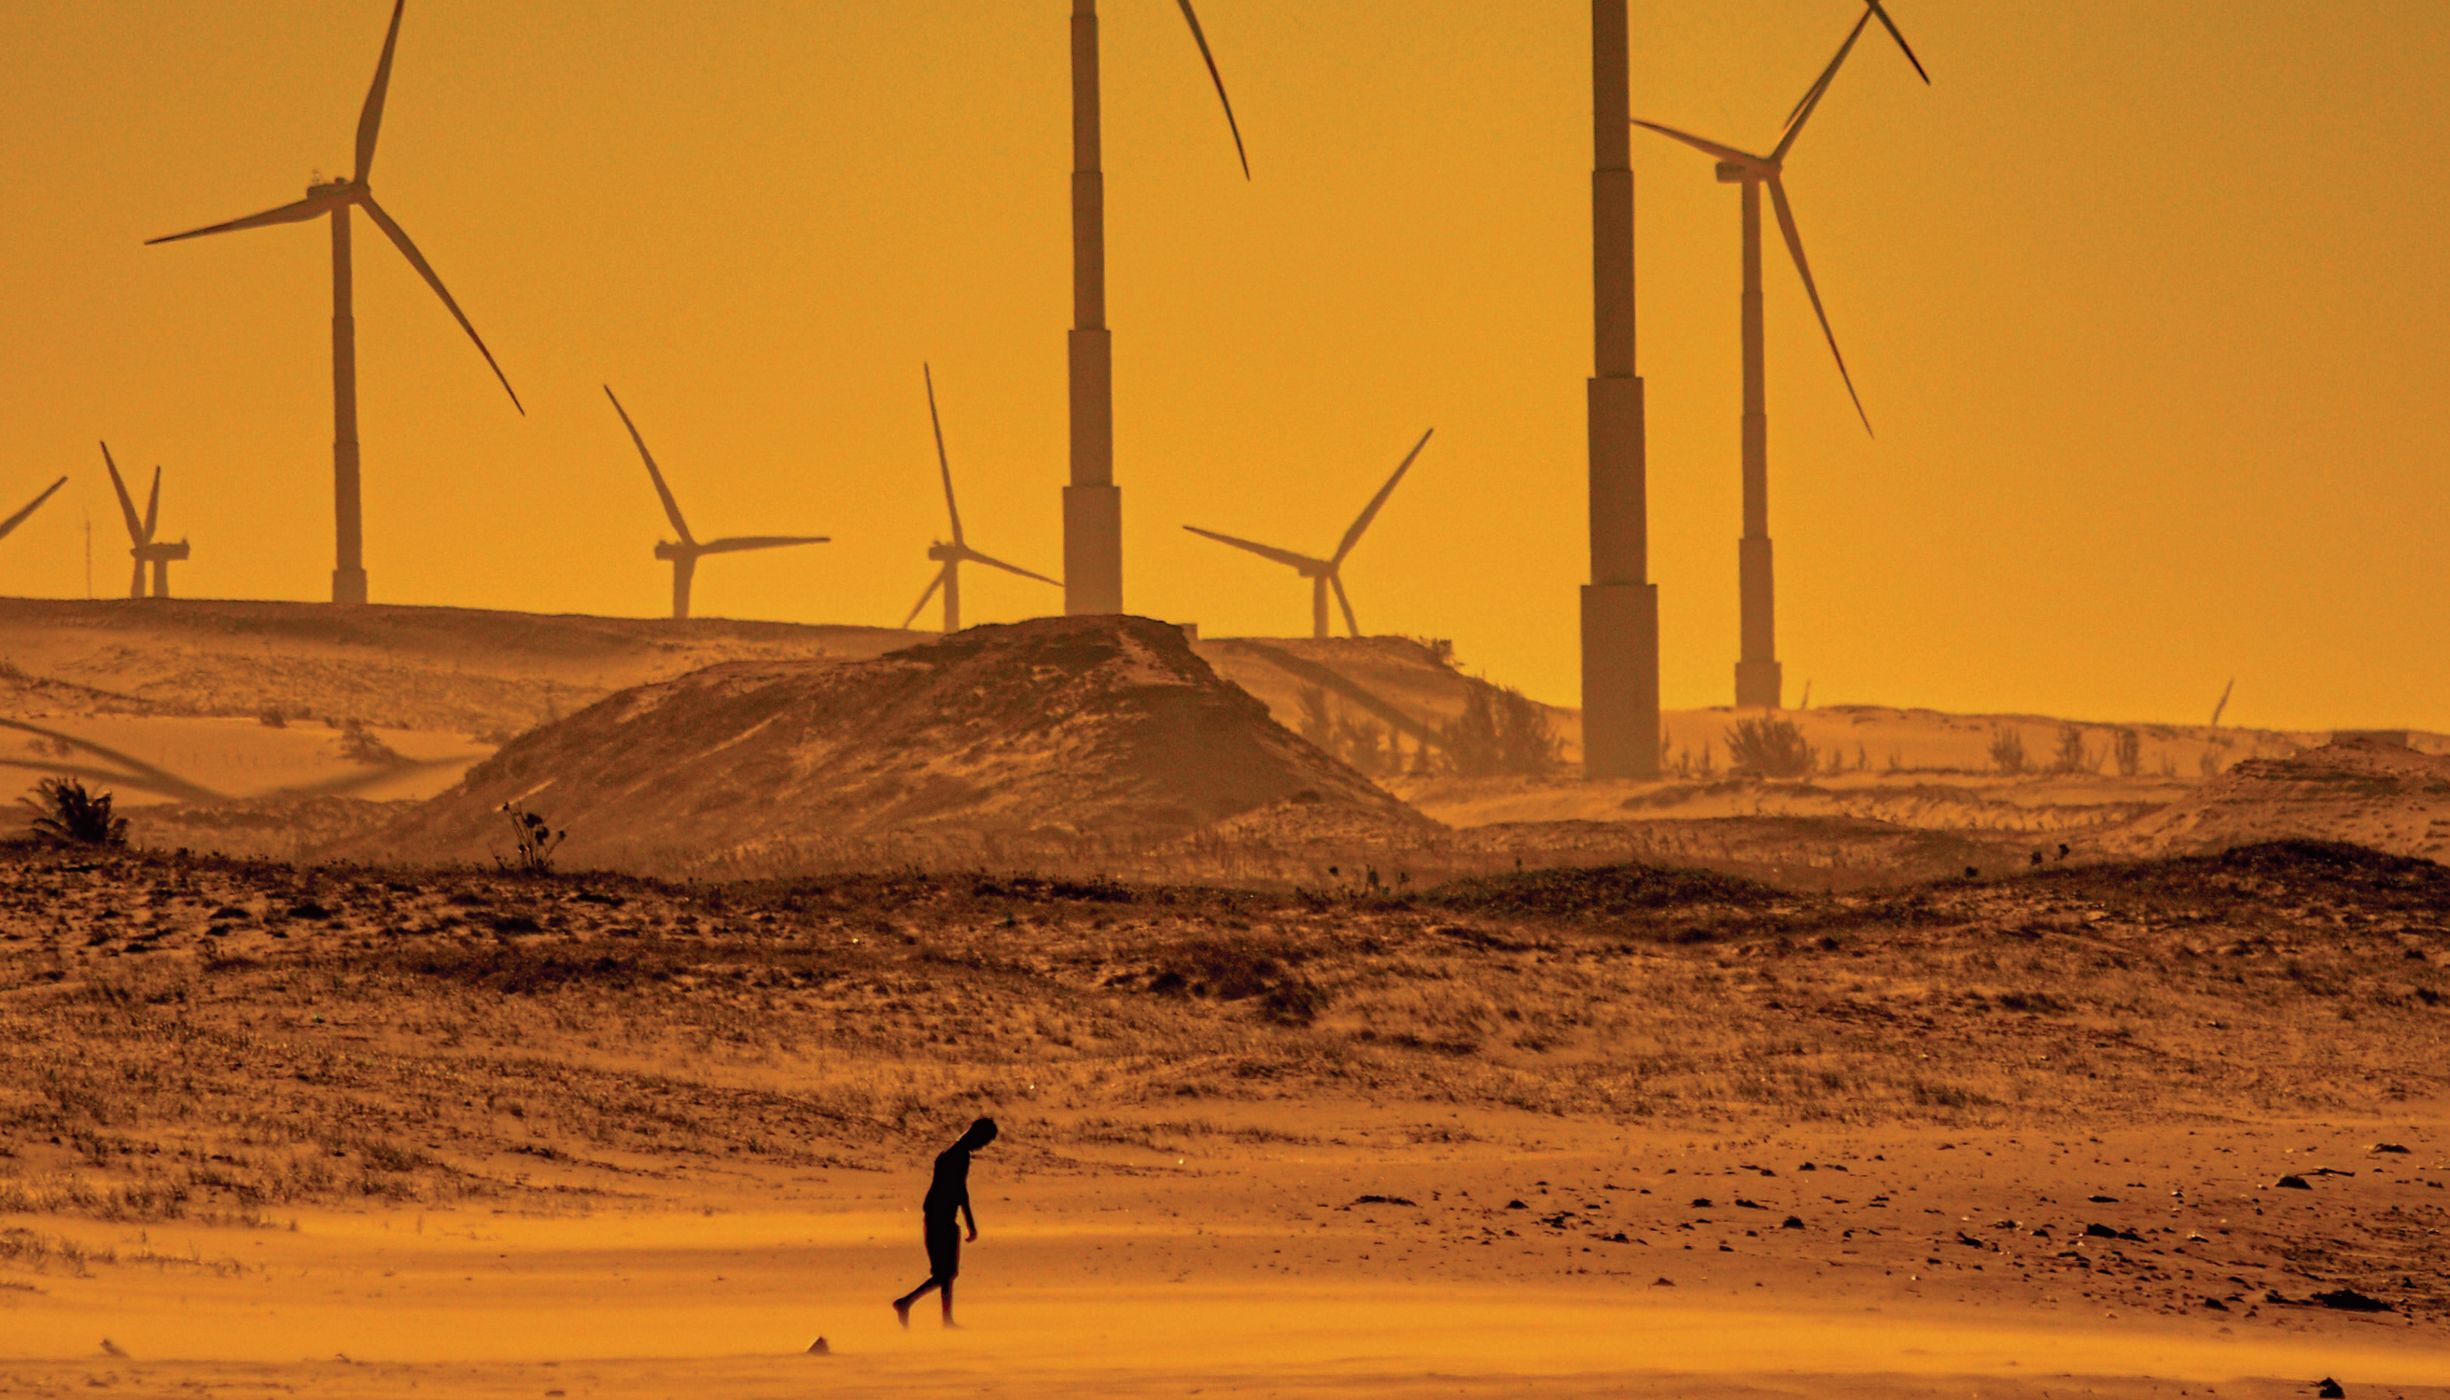 Pessoa andando em paisagem desértica a frente de geradores de energia eólica.